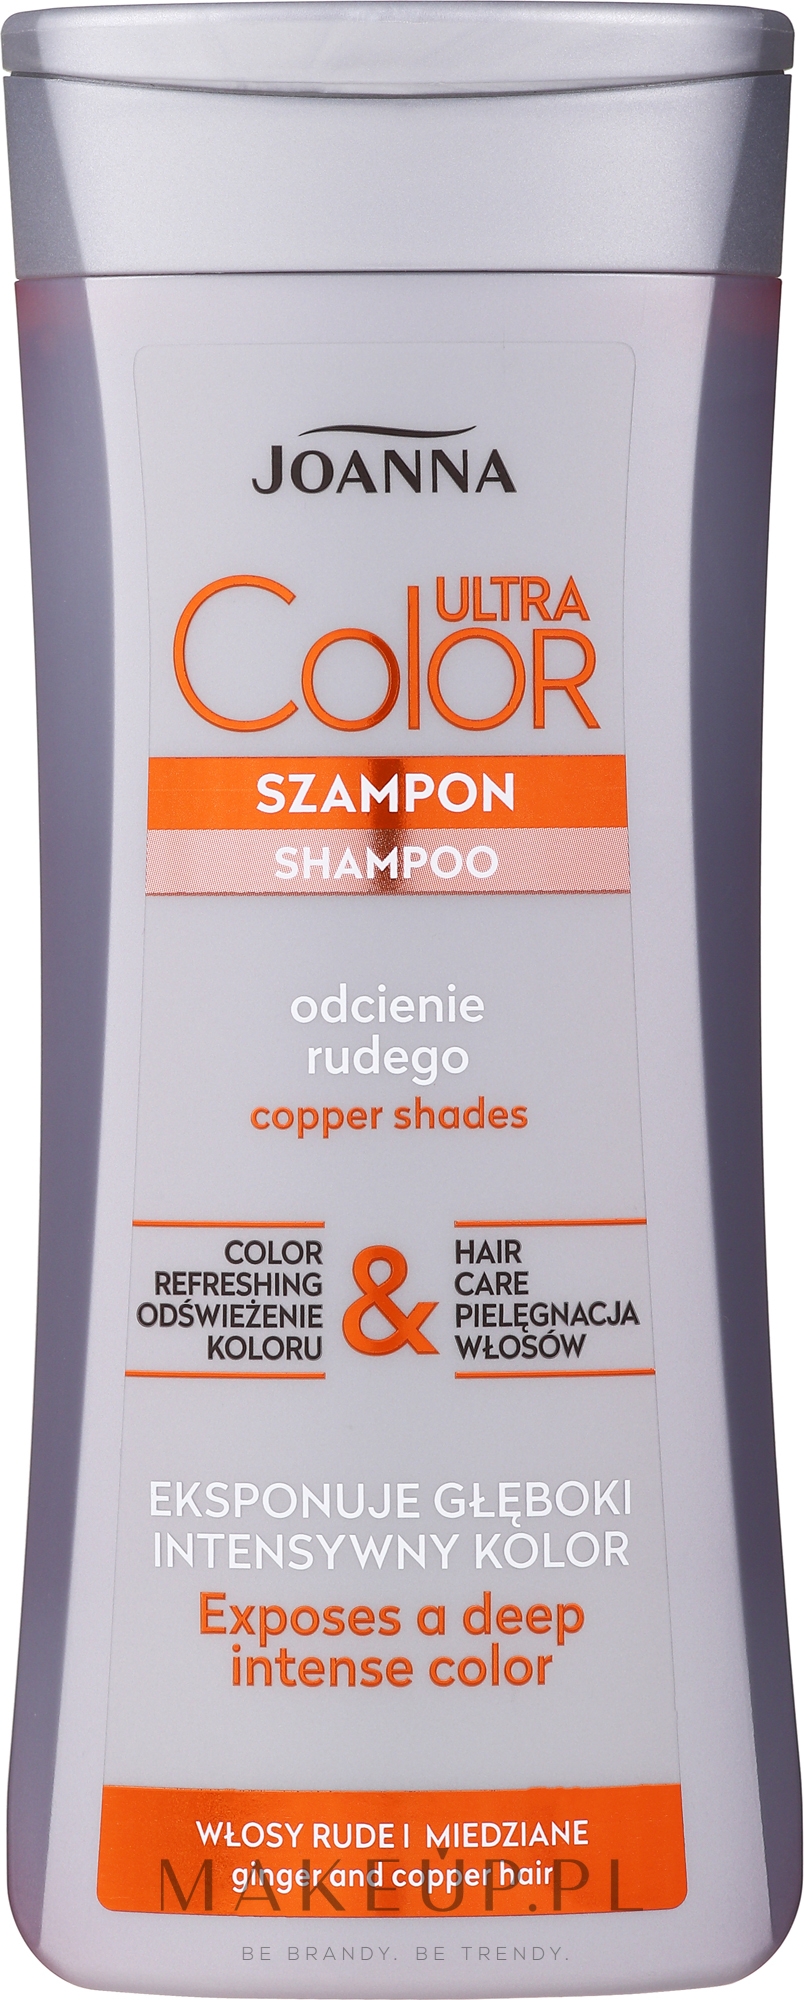 szampon włosy rude